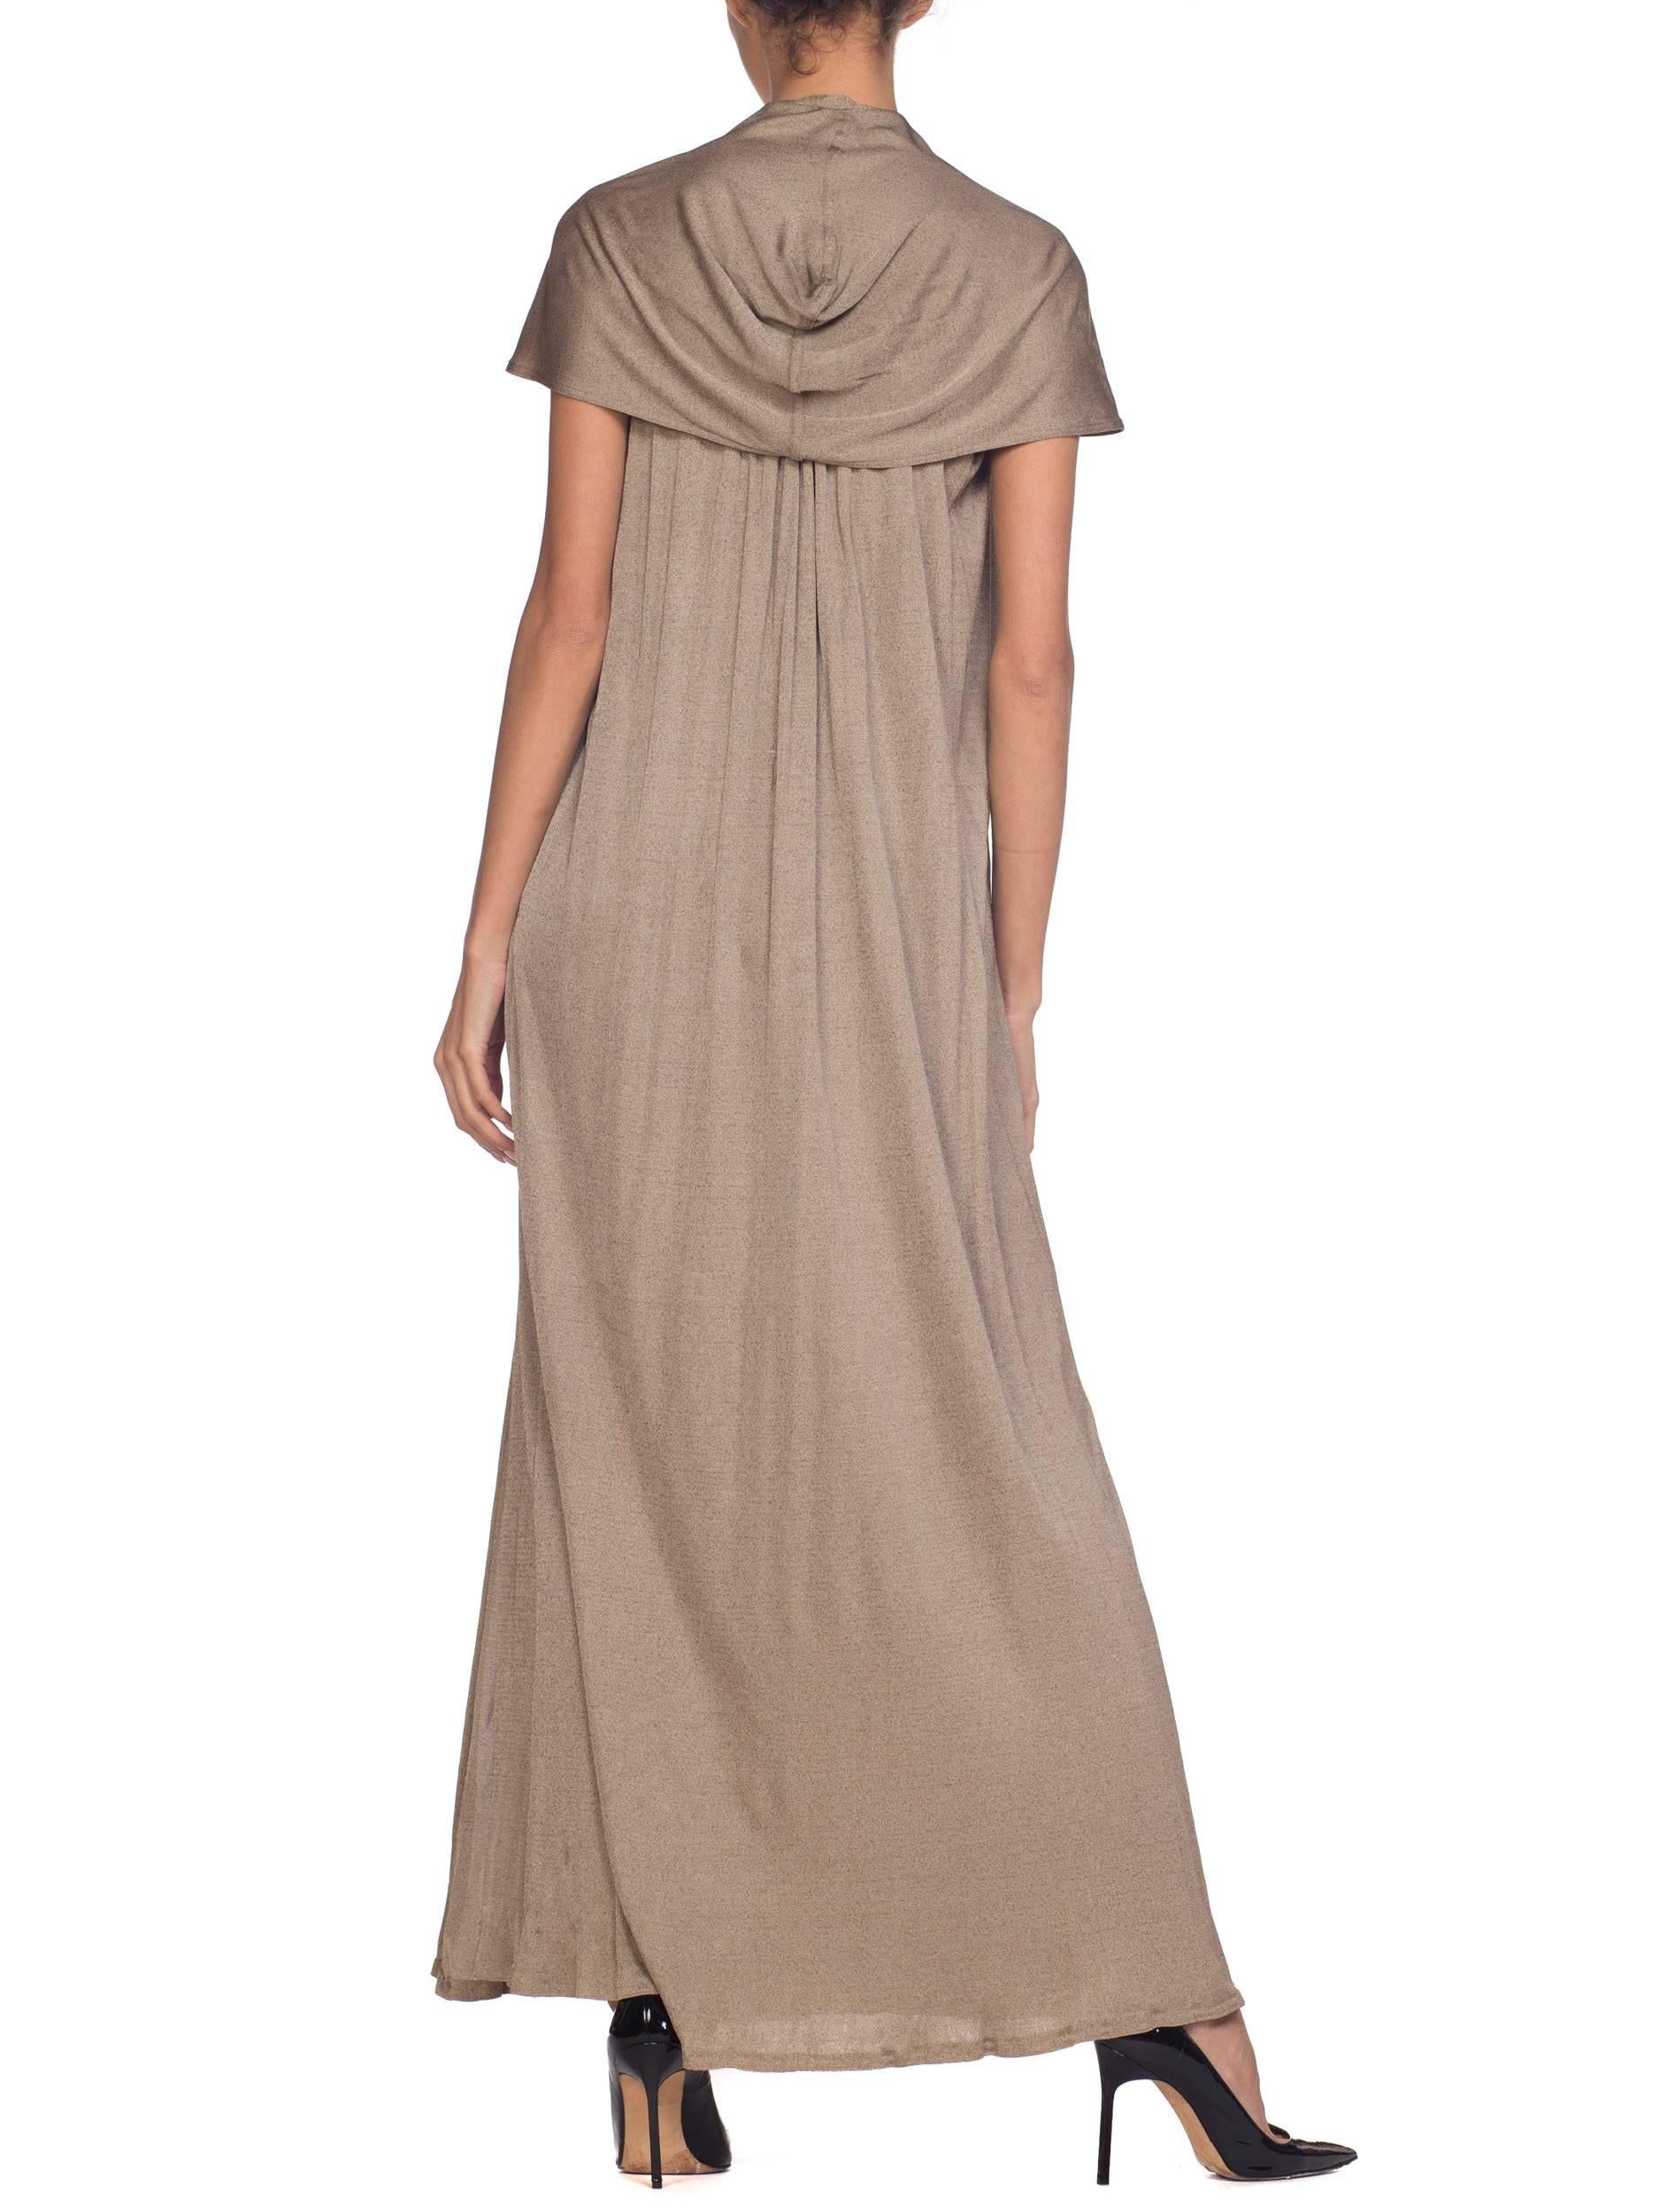 1970s Diane Von Furstenberg Silk Jersey Dress with Hood 2